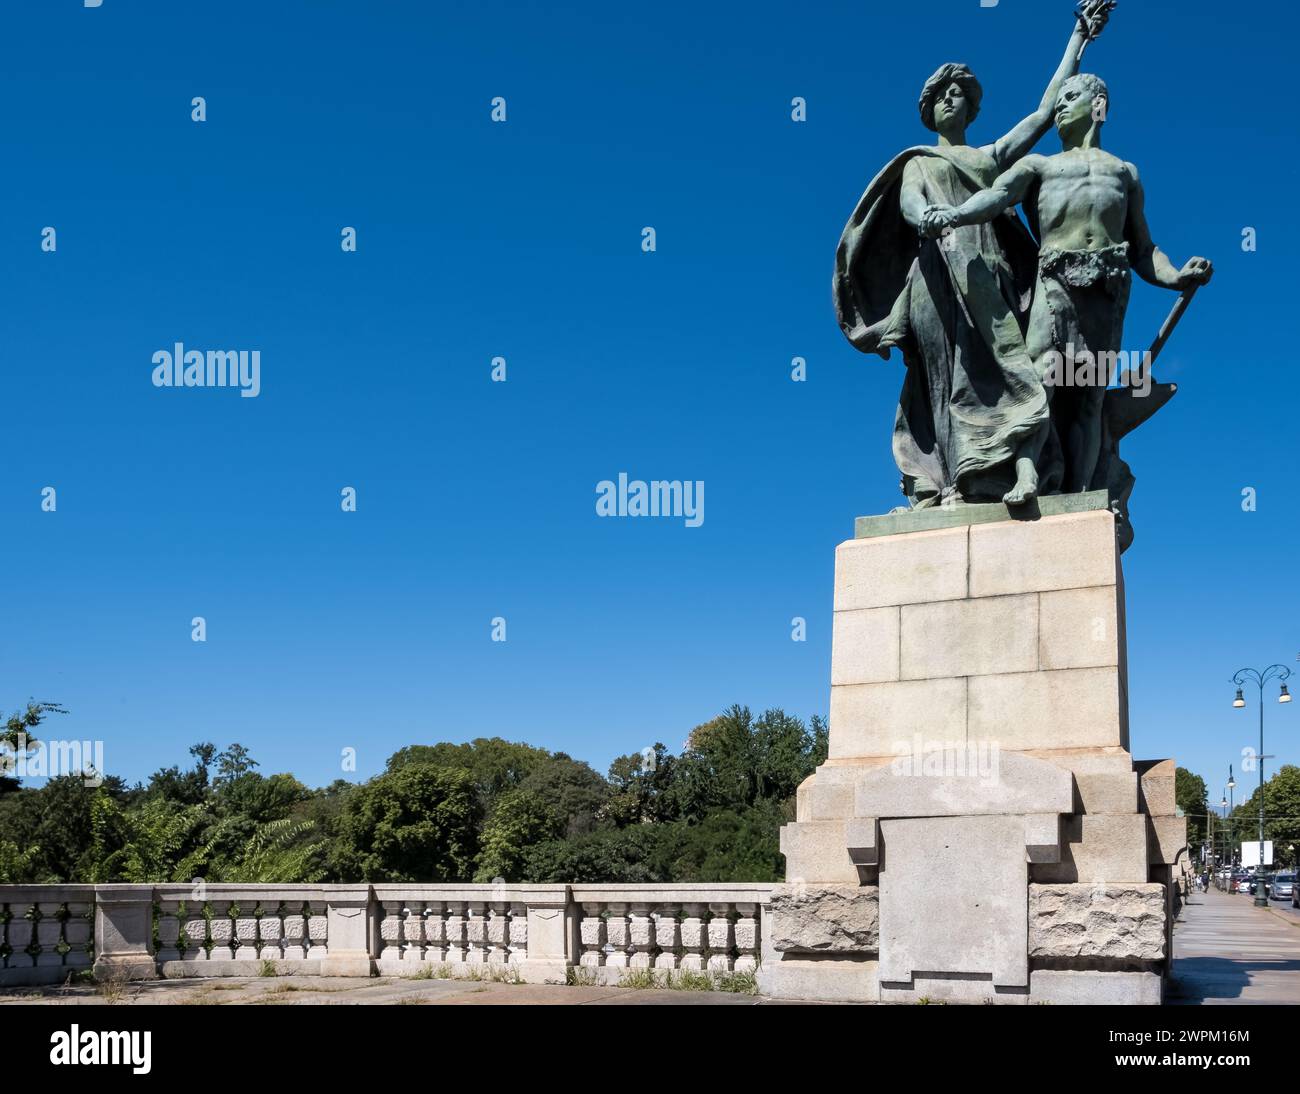 Dettaglio architettonico delle statue che adornano il ponte Umberto i, che si estende lungo il po, Torino, Piemonte, Italia, Europa Foto Stock